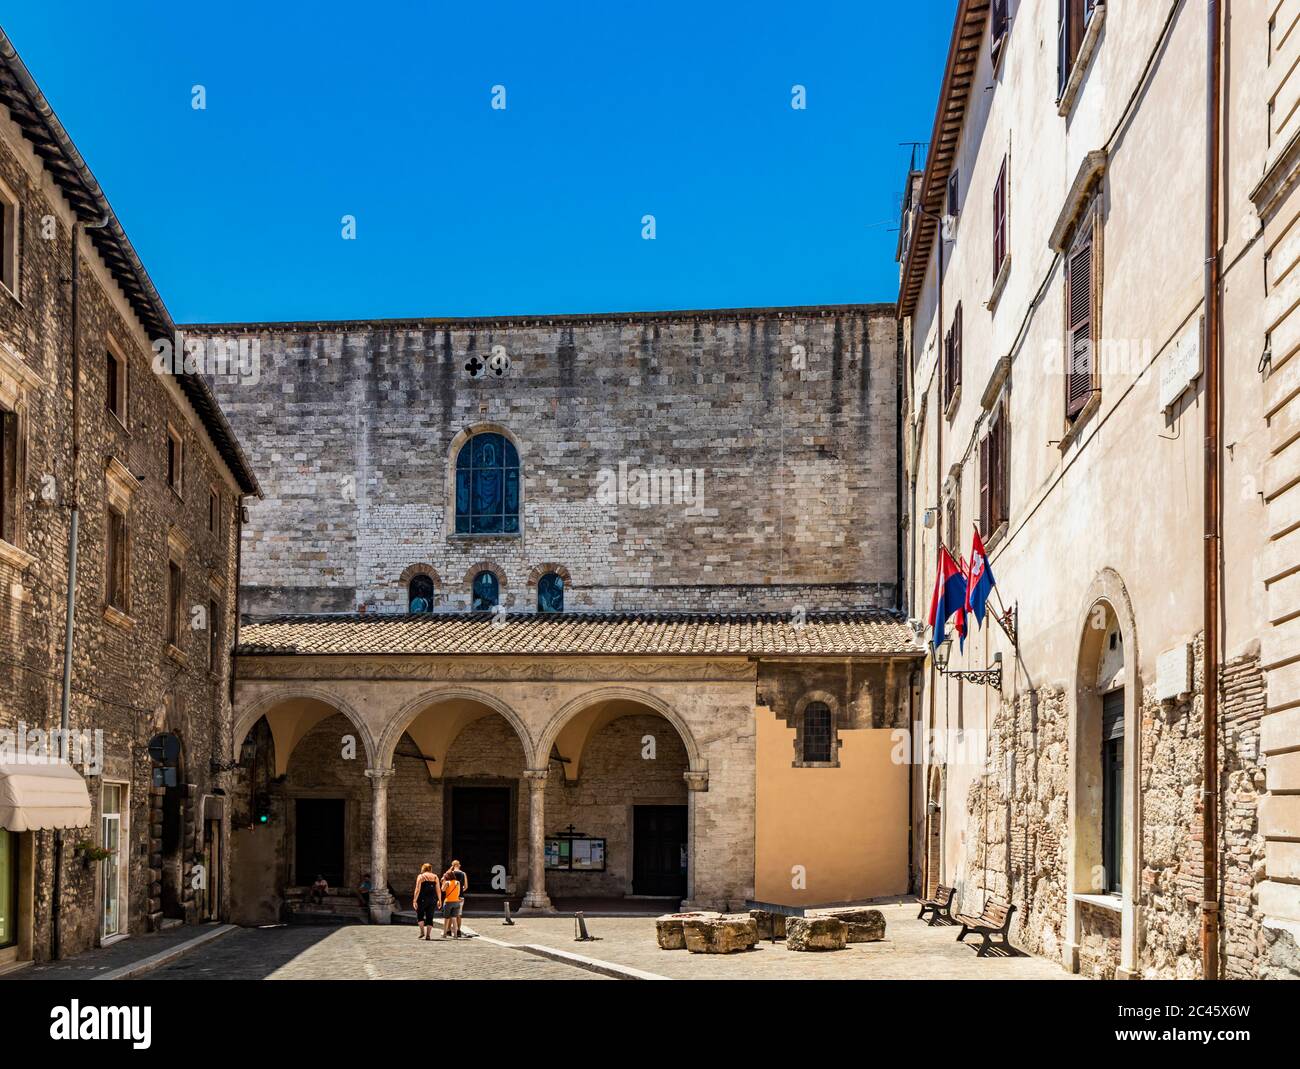 La cathédrale médiévale de San Giovenale dans l'ancien village de Narni. La façade avec le portique et l'entrée de l'église. Ombrie, Terni, IT Banque D'Images